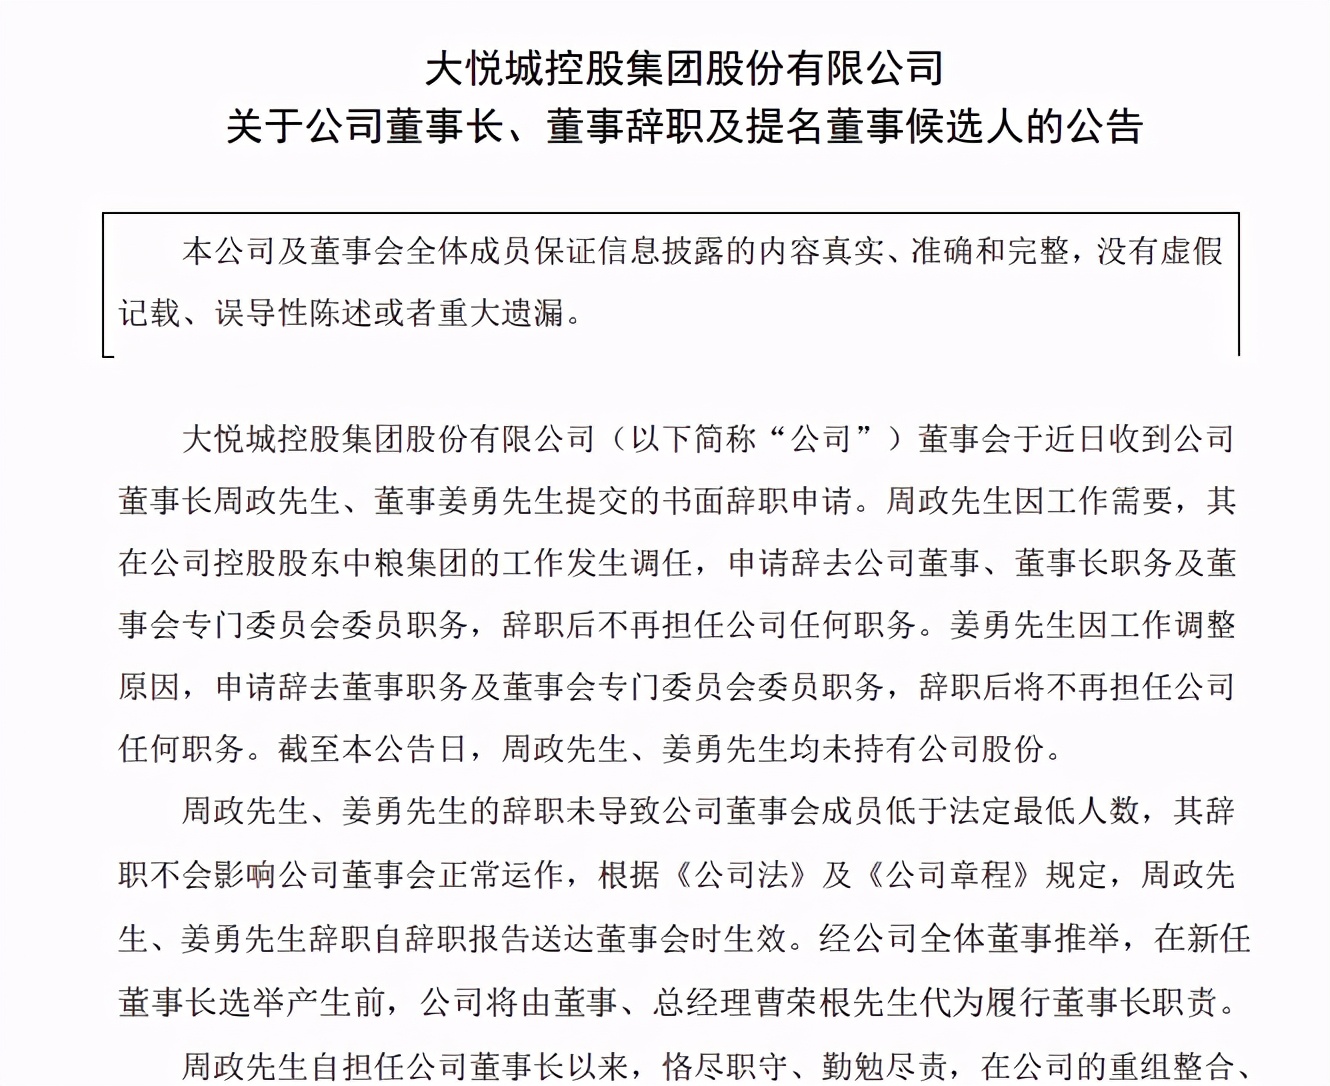 周勇会见广州地铁集团党委书记、董事长丁建隆并调研在穗单位